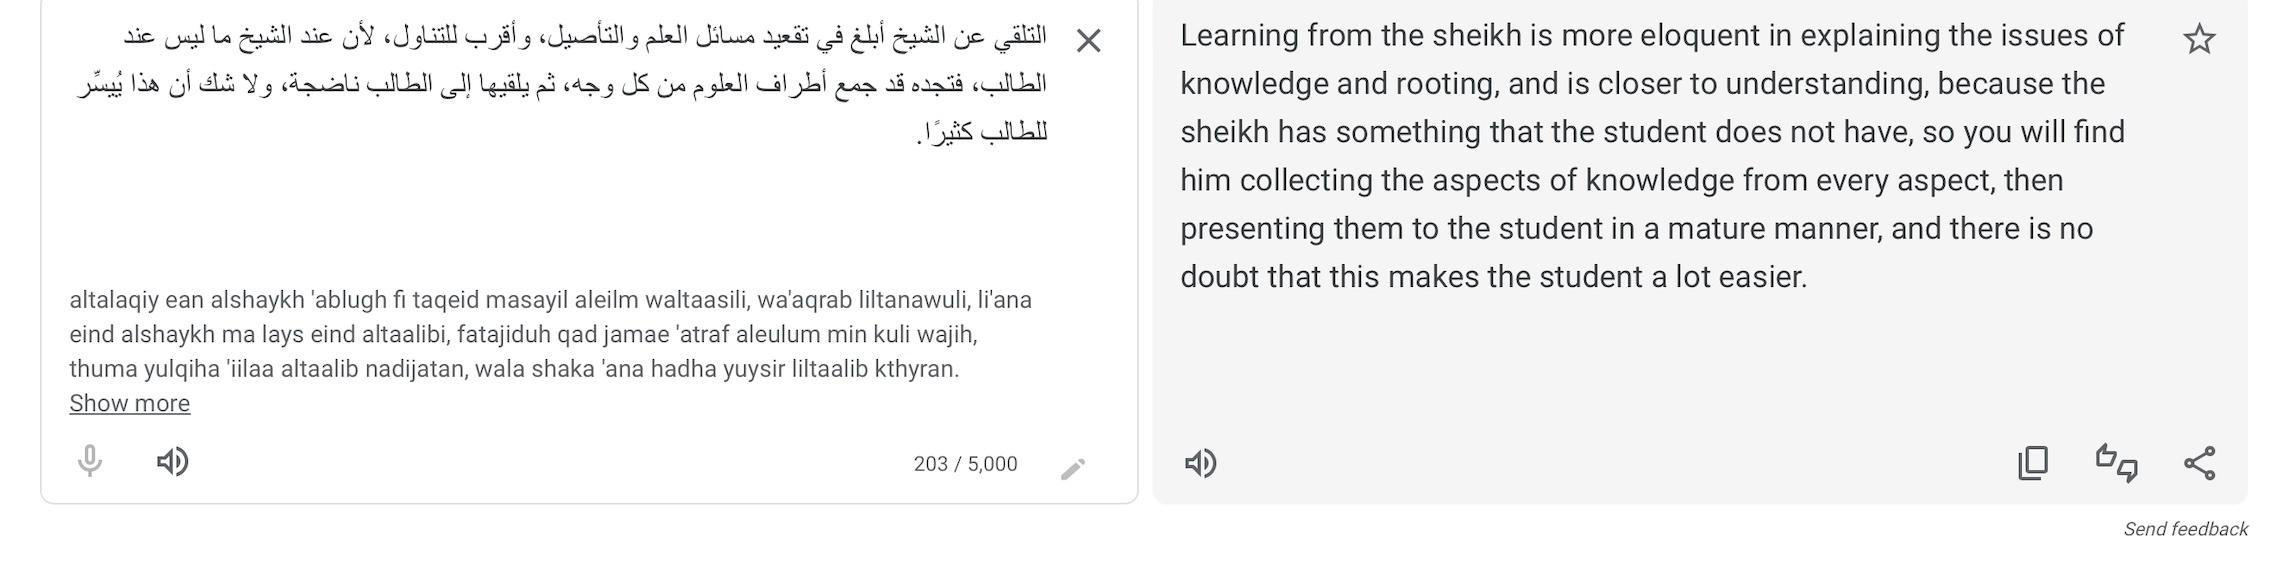 Fiqh Arabic Enlgish translationjpeg